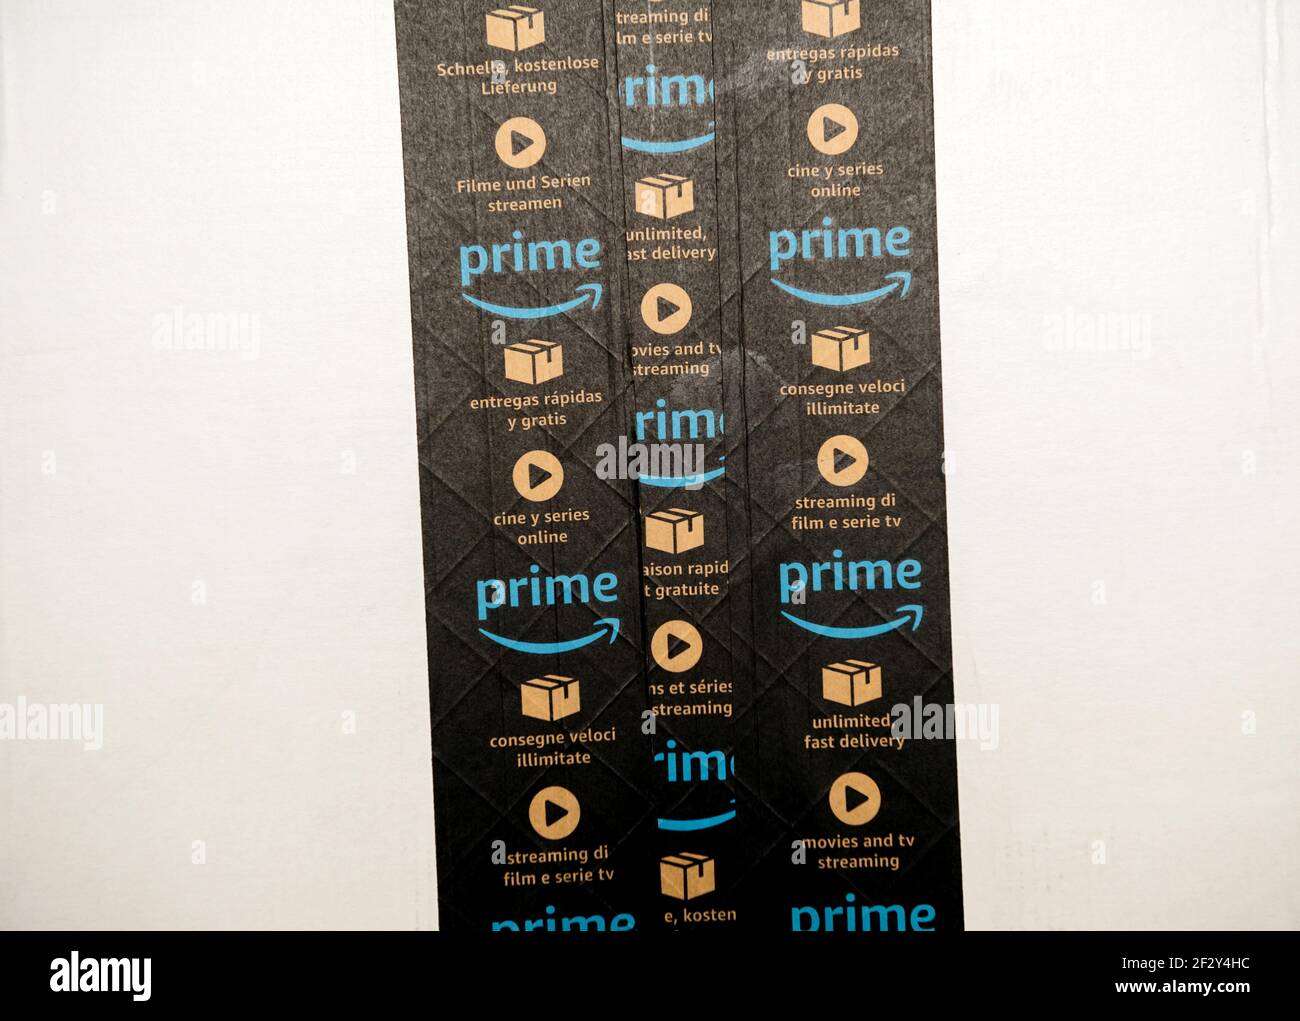 Nahaufnahme mehrerer Zeilen Amazon Prime Scotch-Band Auf dem Karton eines  Paketes mit Prime-Werbung für Schnelle Lieferung und TV-Streaming  Stockfotografie - Alamy